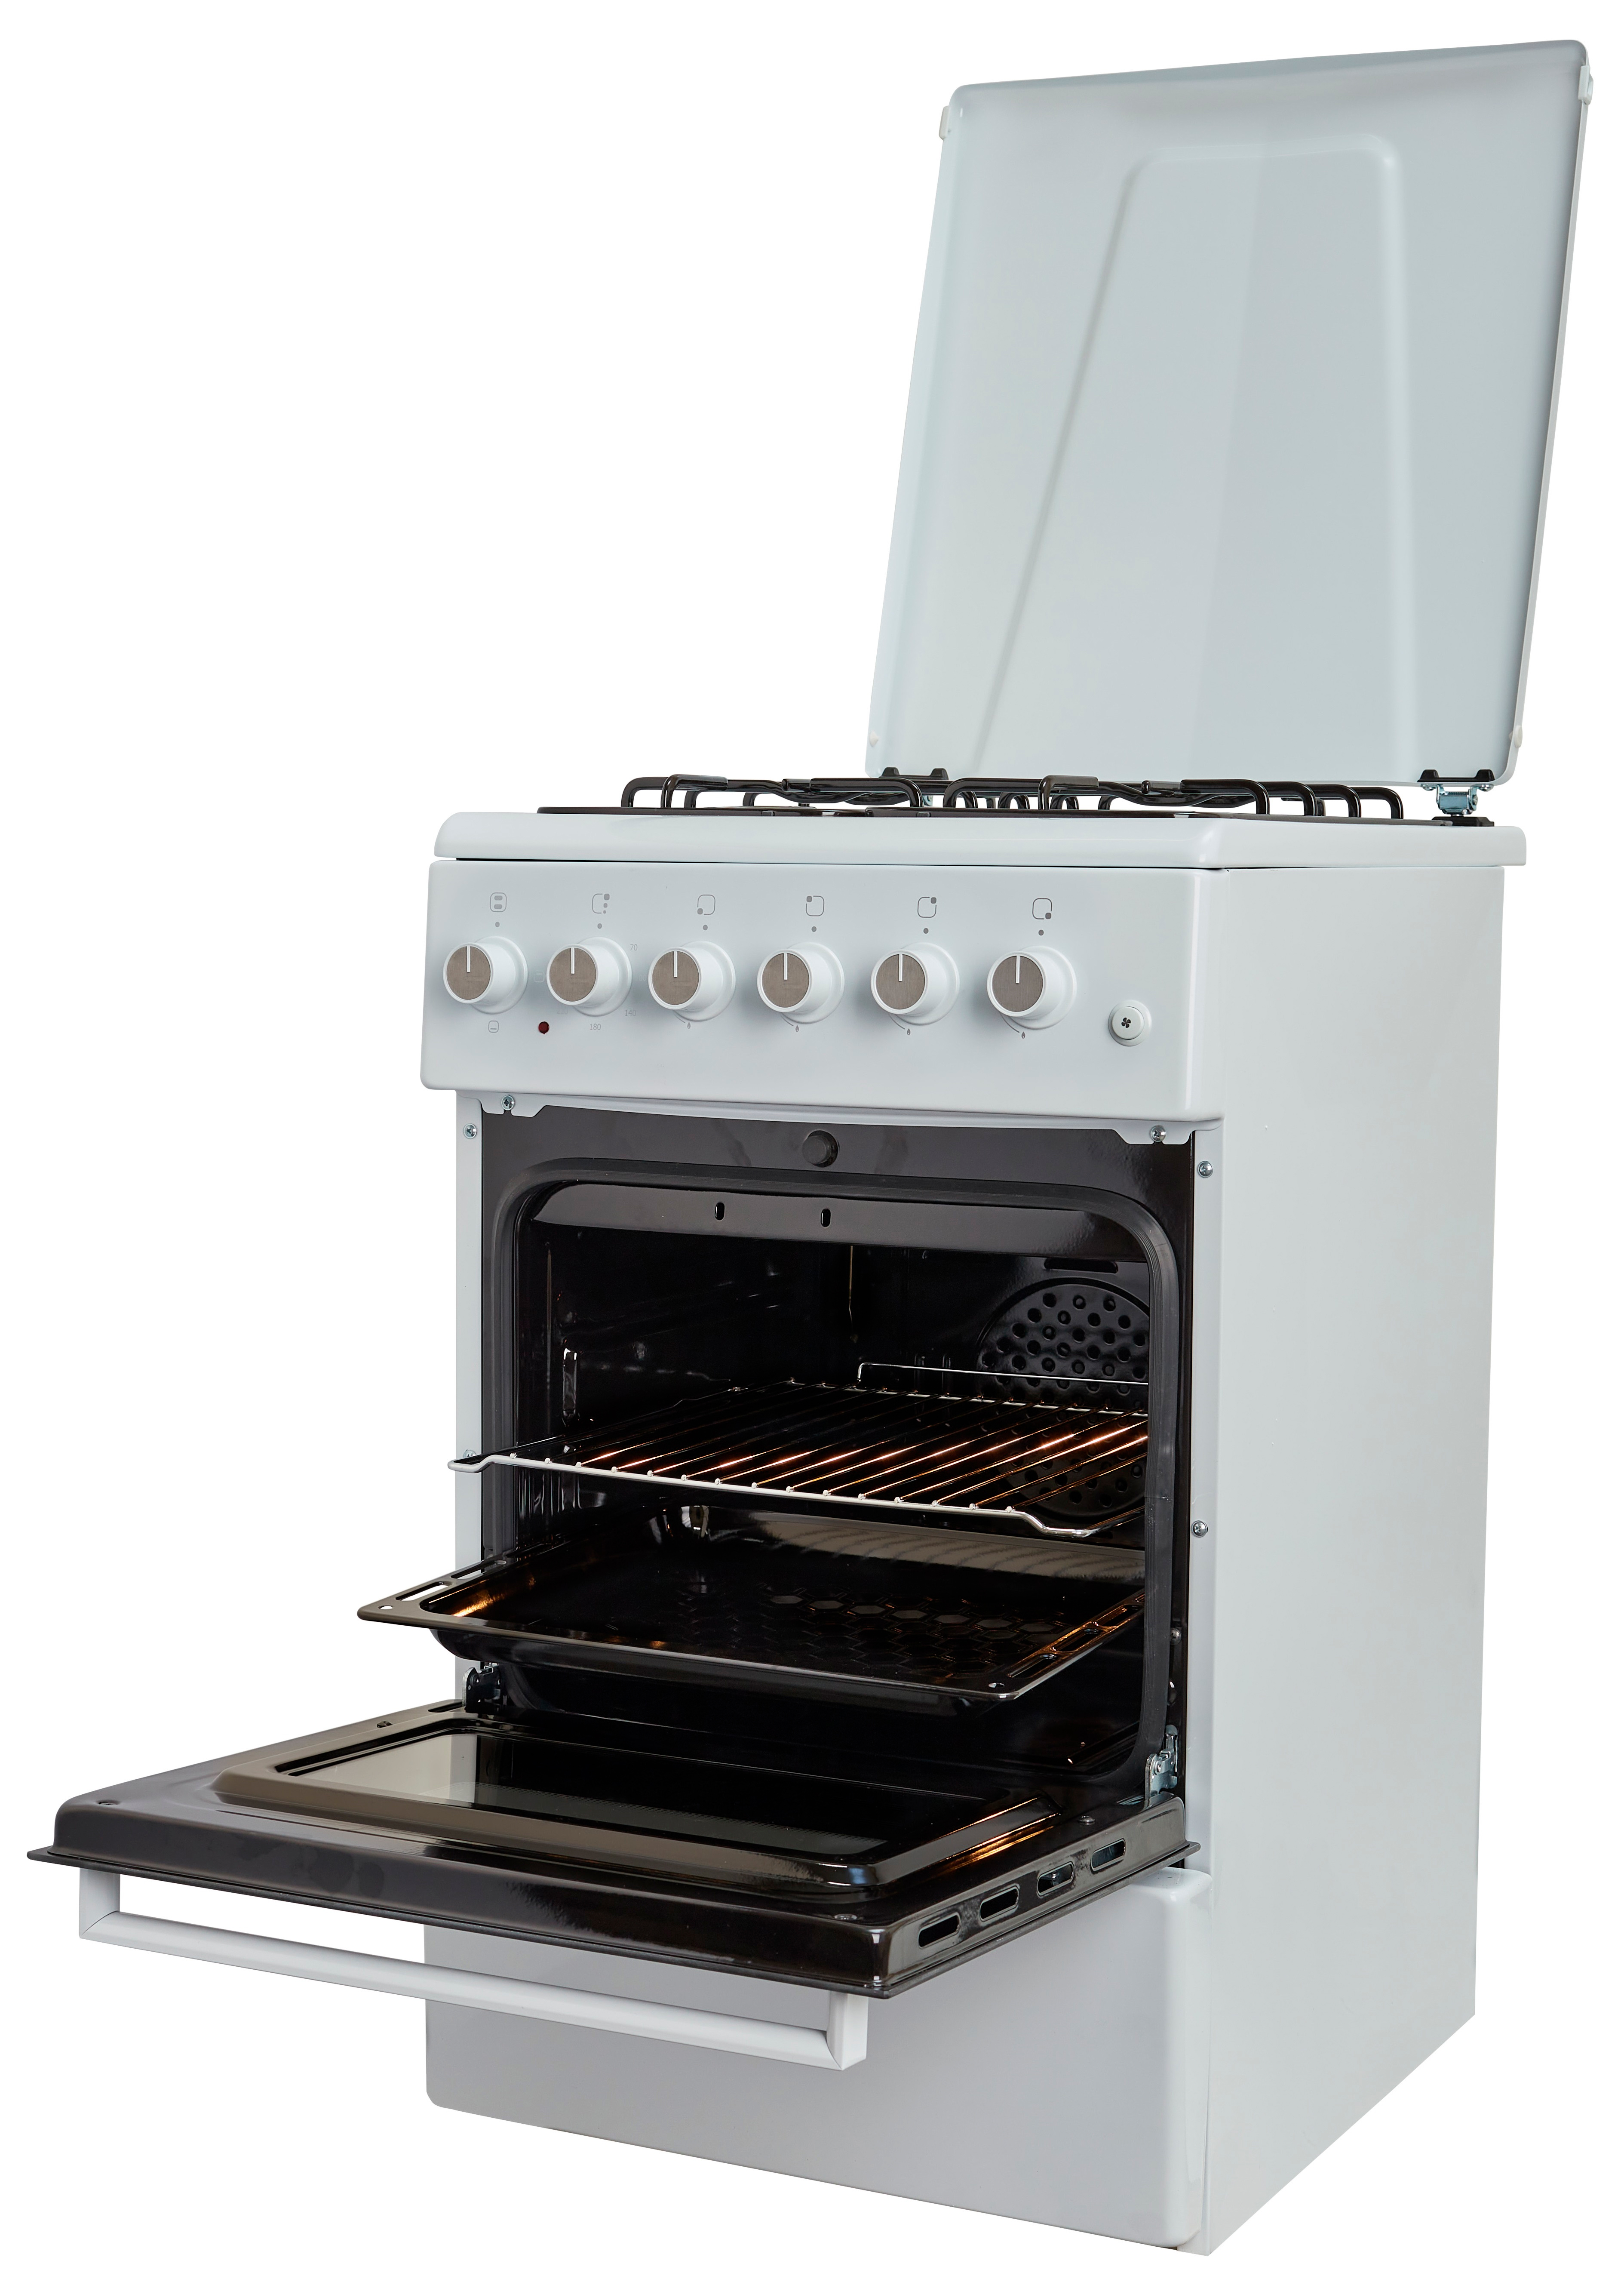 Кухонная плита Fiesta C 5403 SADT-W отзывы - изображения 5